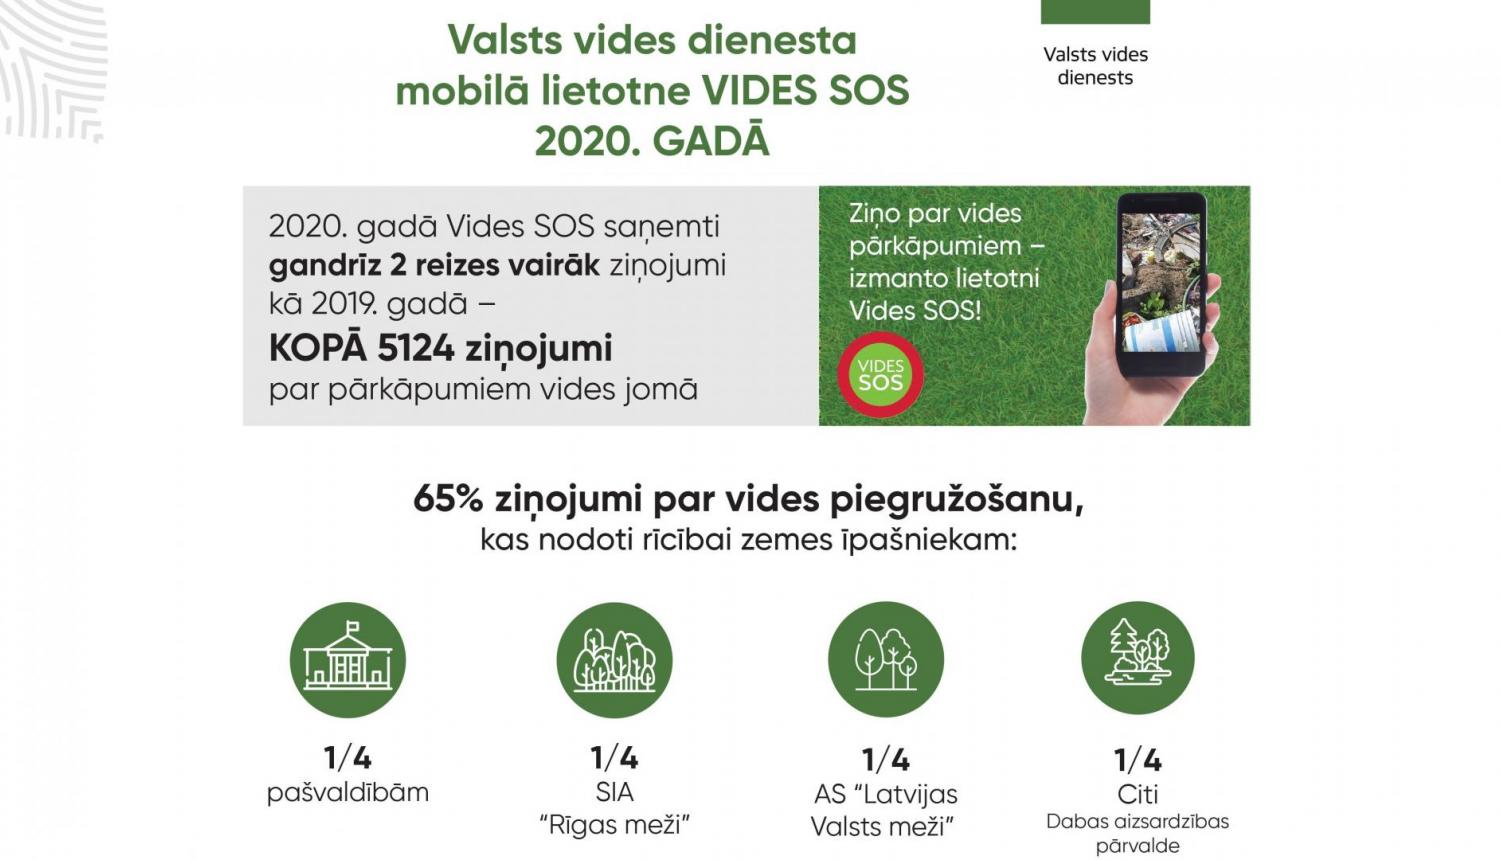 VVD Vides SOS 2020